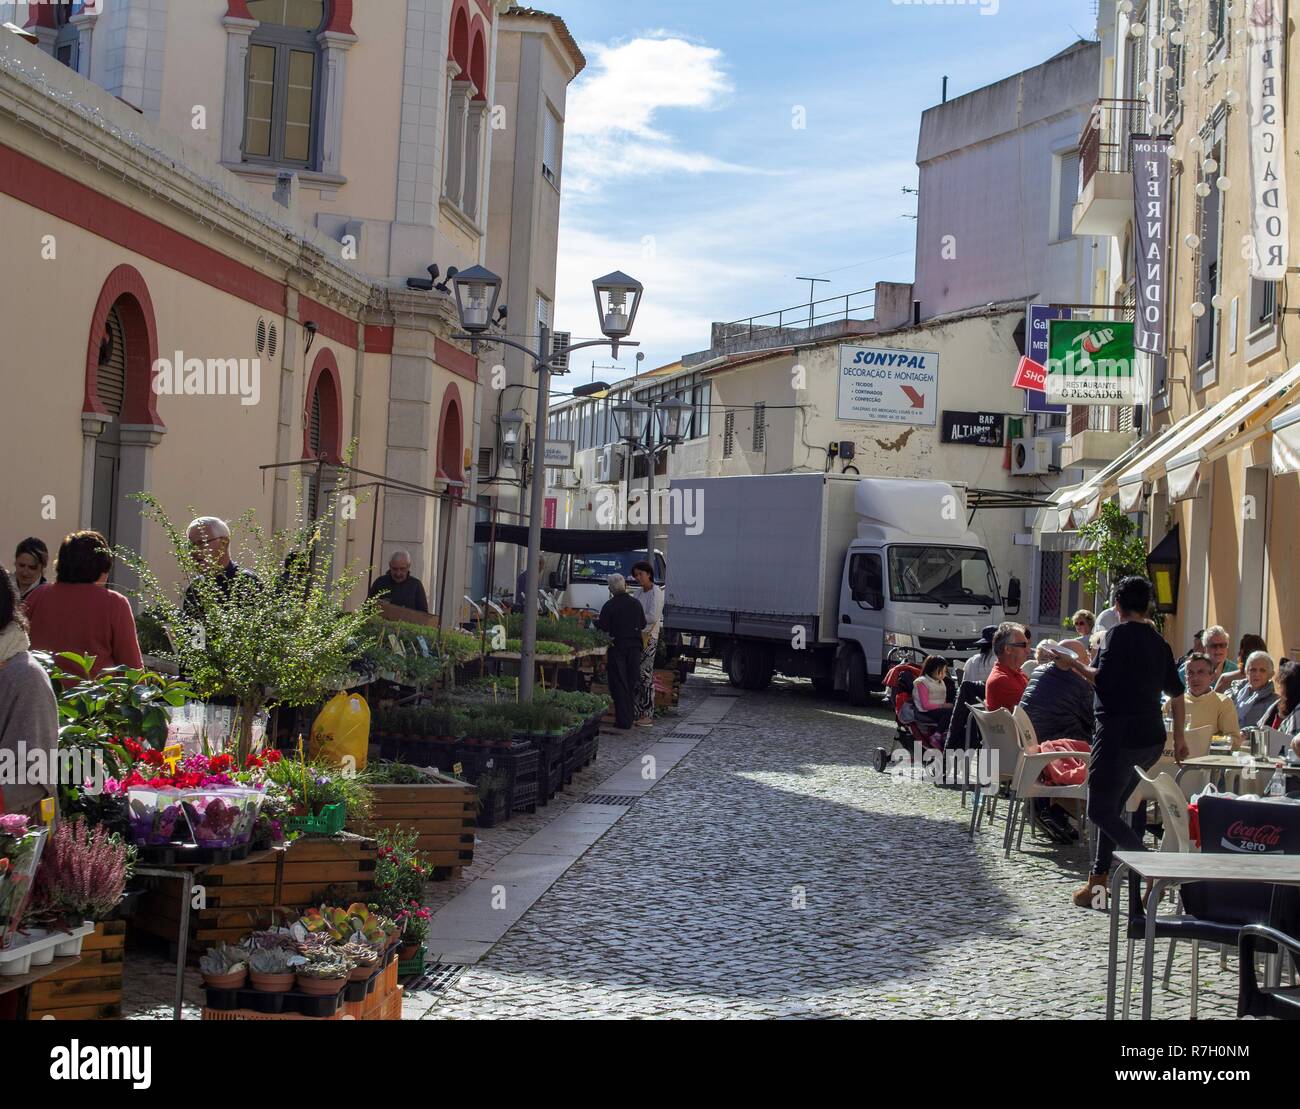 Loulé, Portogallo. Intorno al mercato principale a loulé è un luogo popolare per mangiare fuori e bere caffè. Foto Stock